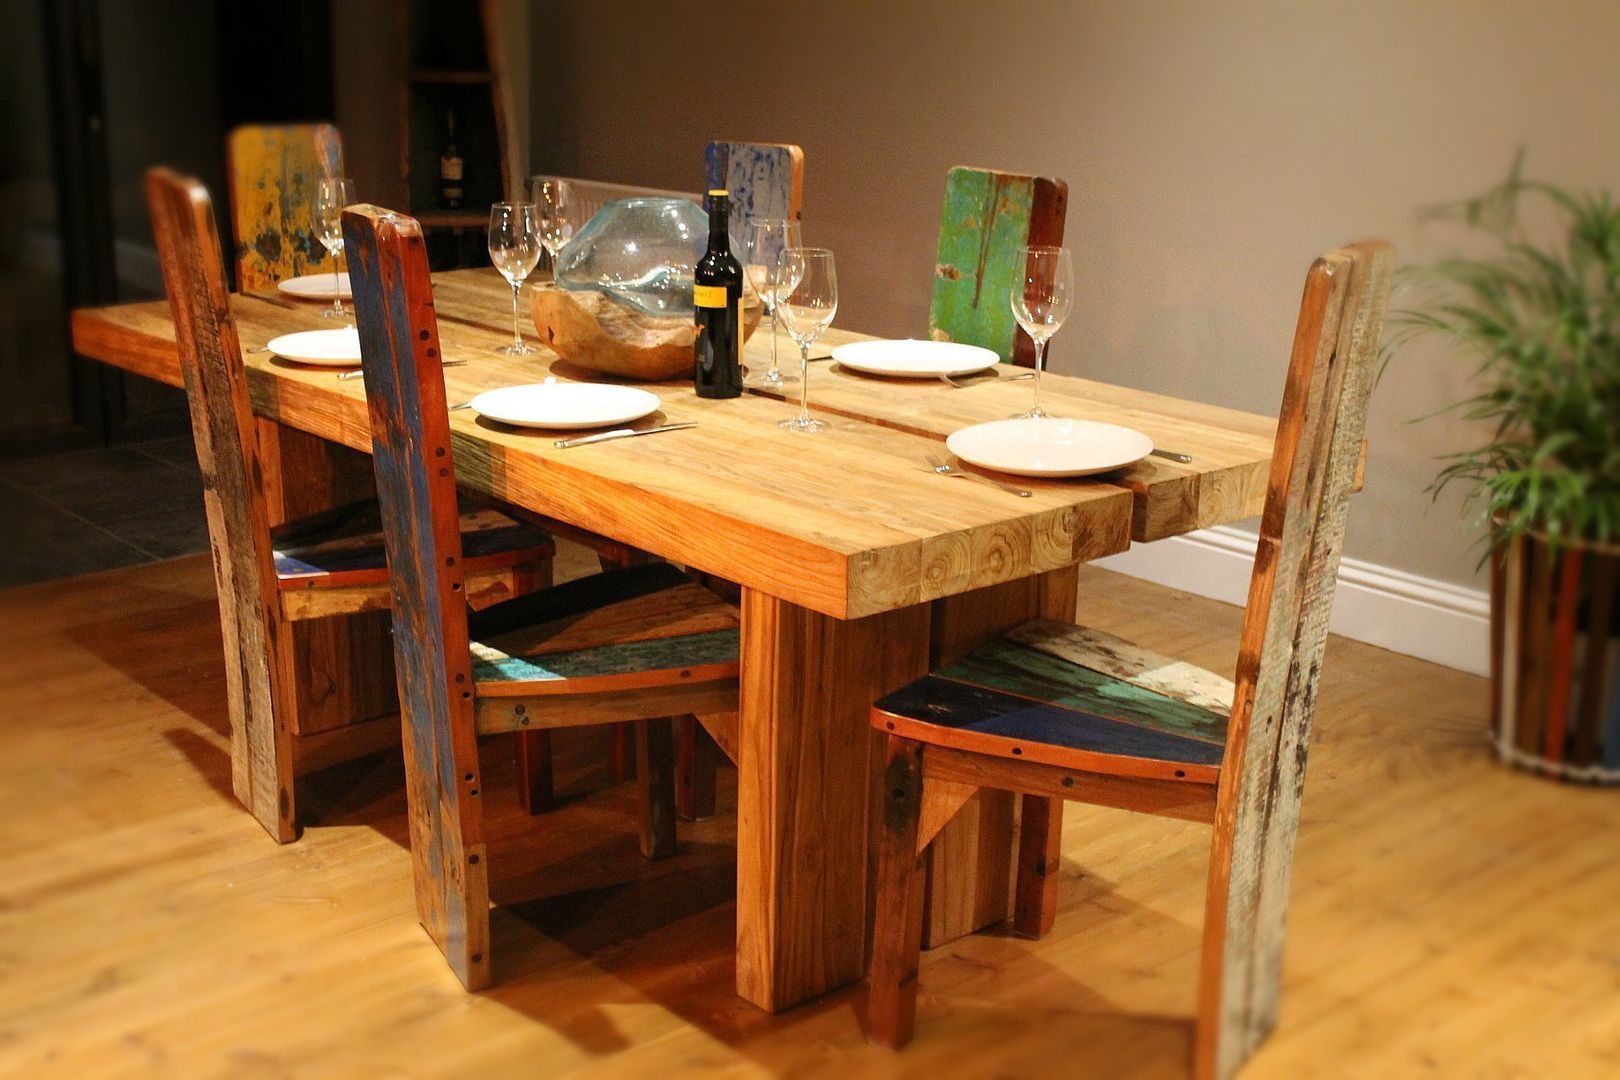 Raja Teak Dining Table BluBambu Living Rustic style dining room Tables